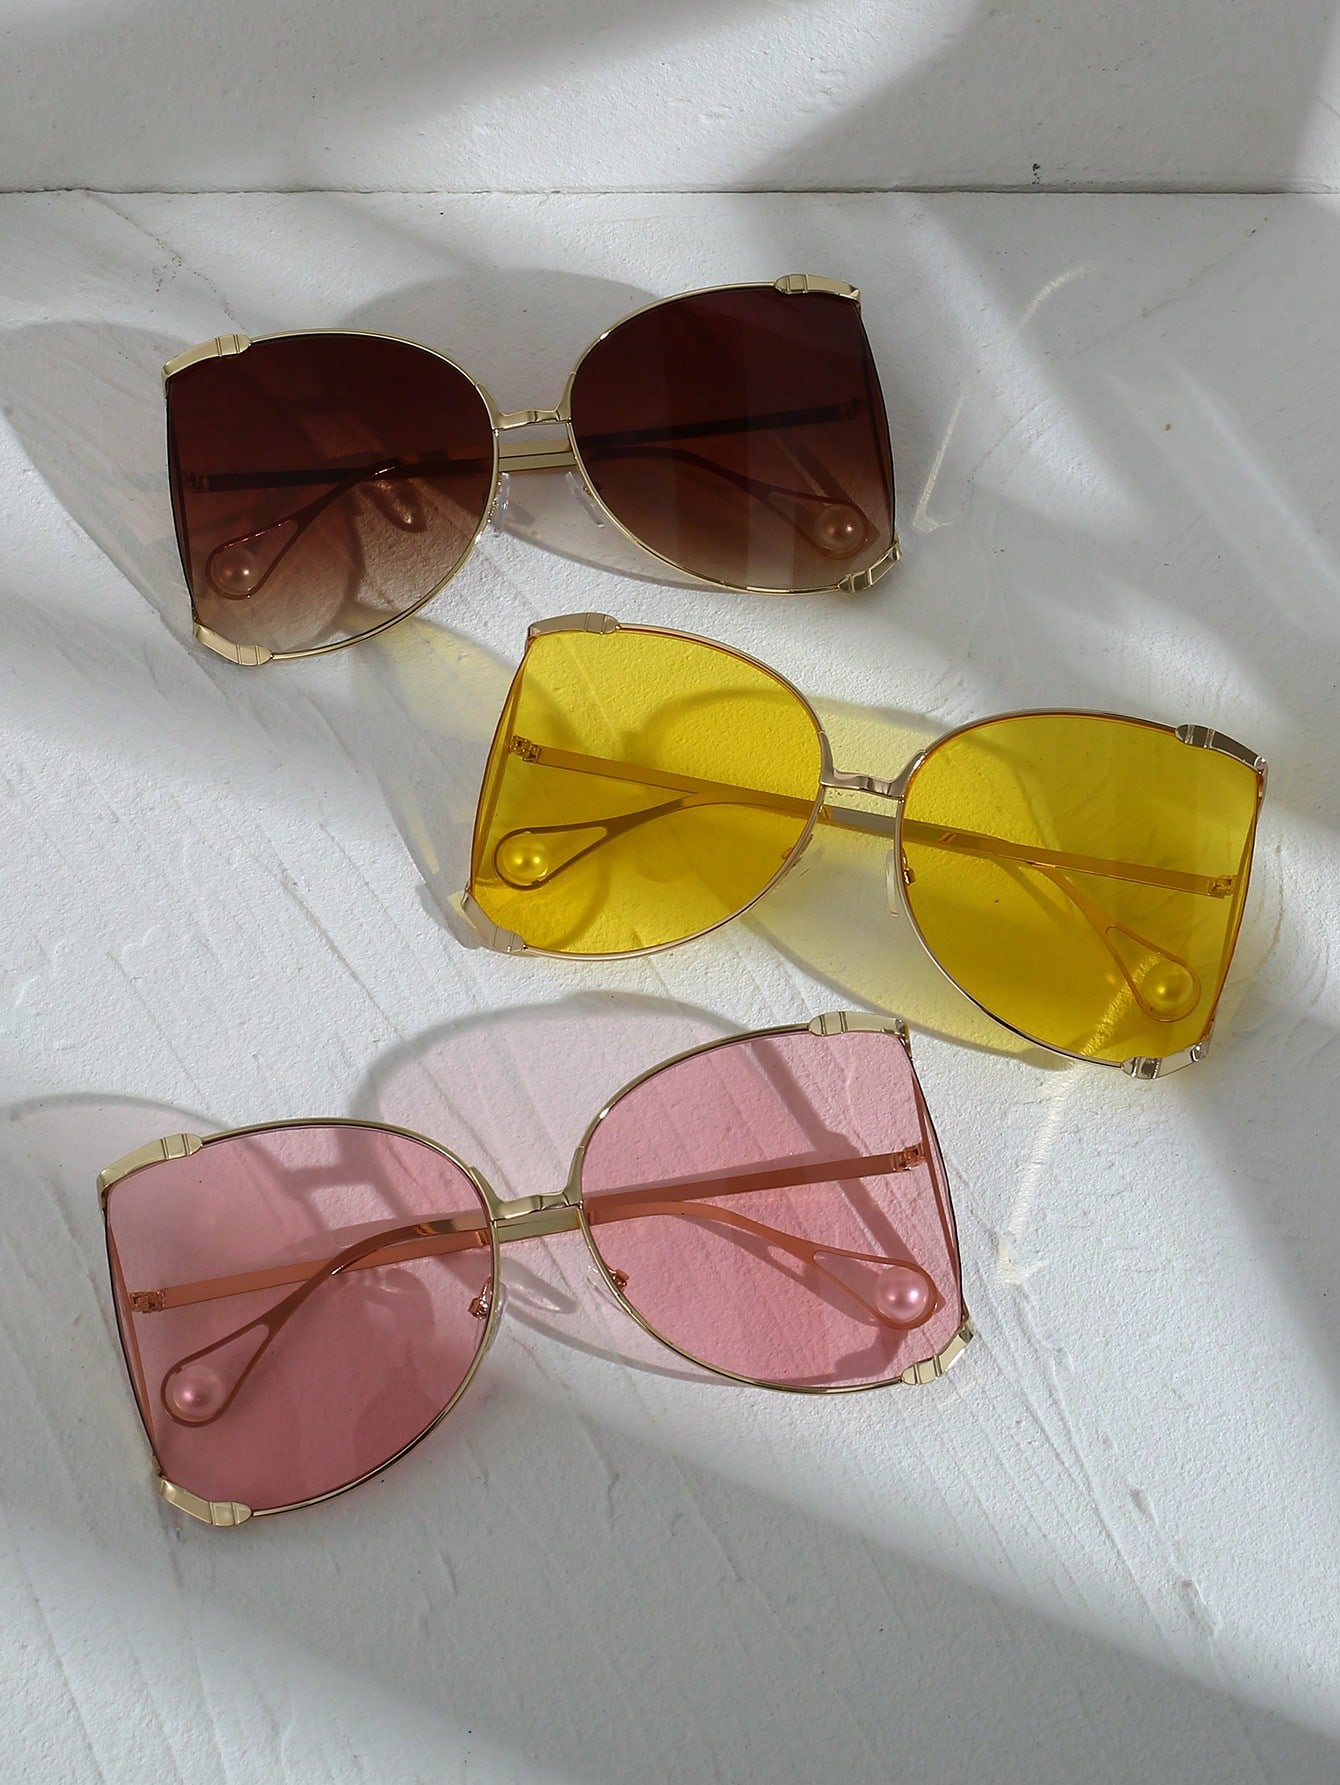 1 шт. женские большие модные солнцезащитные очки геометрической формы Y2k аксессуар для вечеринок и путешествий